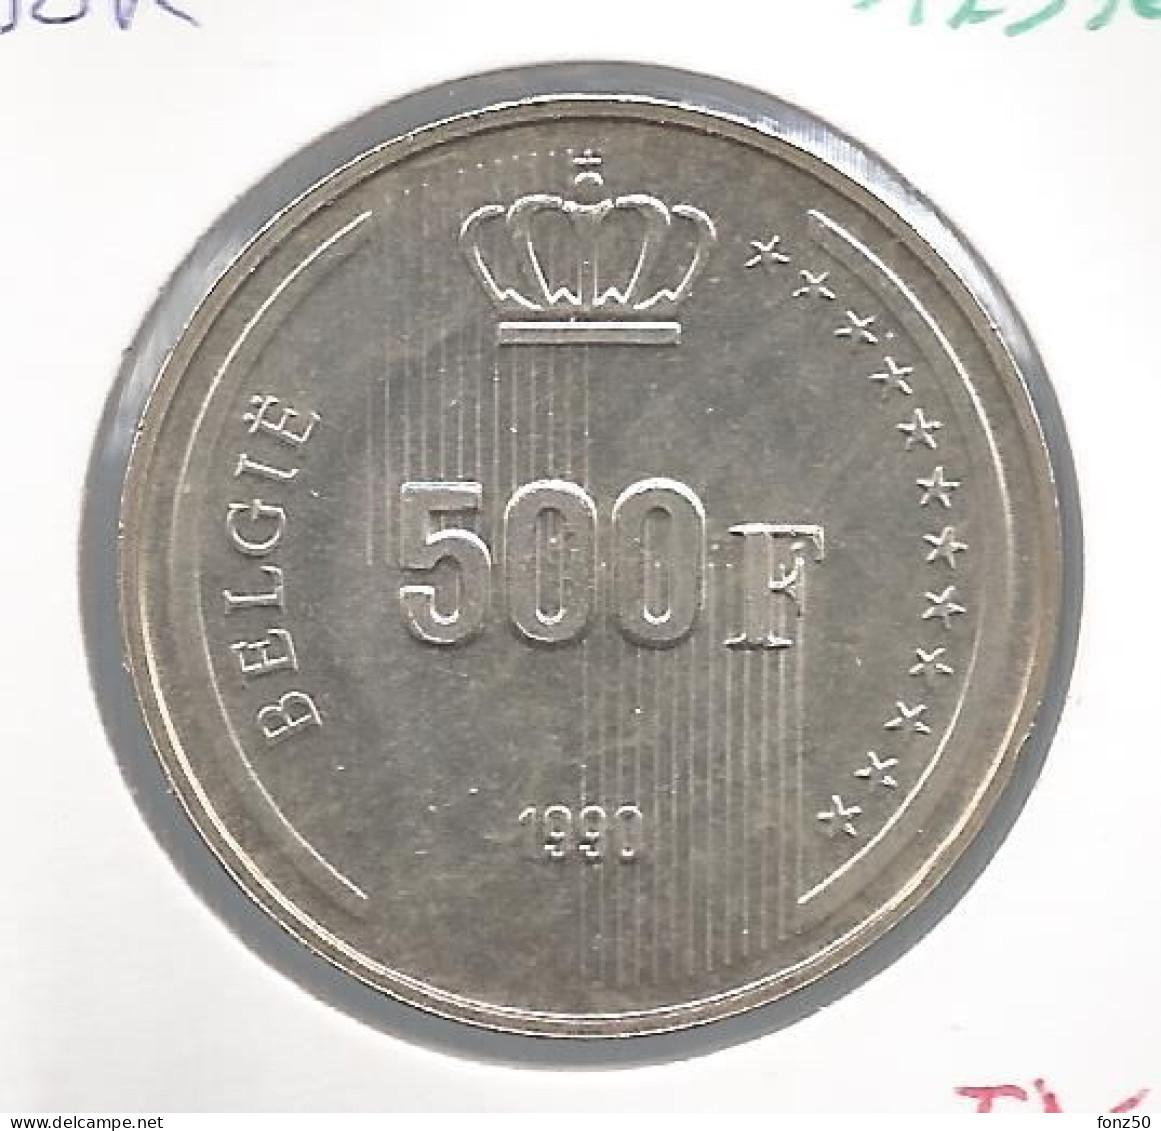 BOUDEWIJN * 500 Frank 1990 Vlaams * F D C * Nr 12376 - 500 Francs